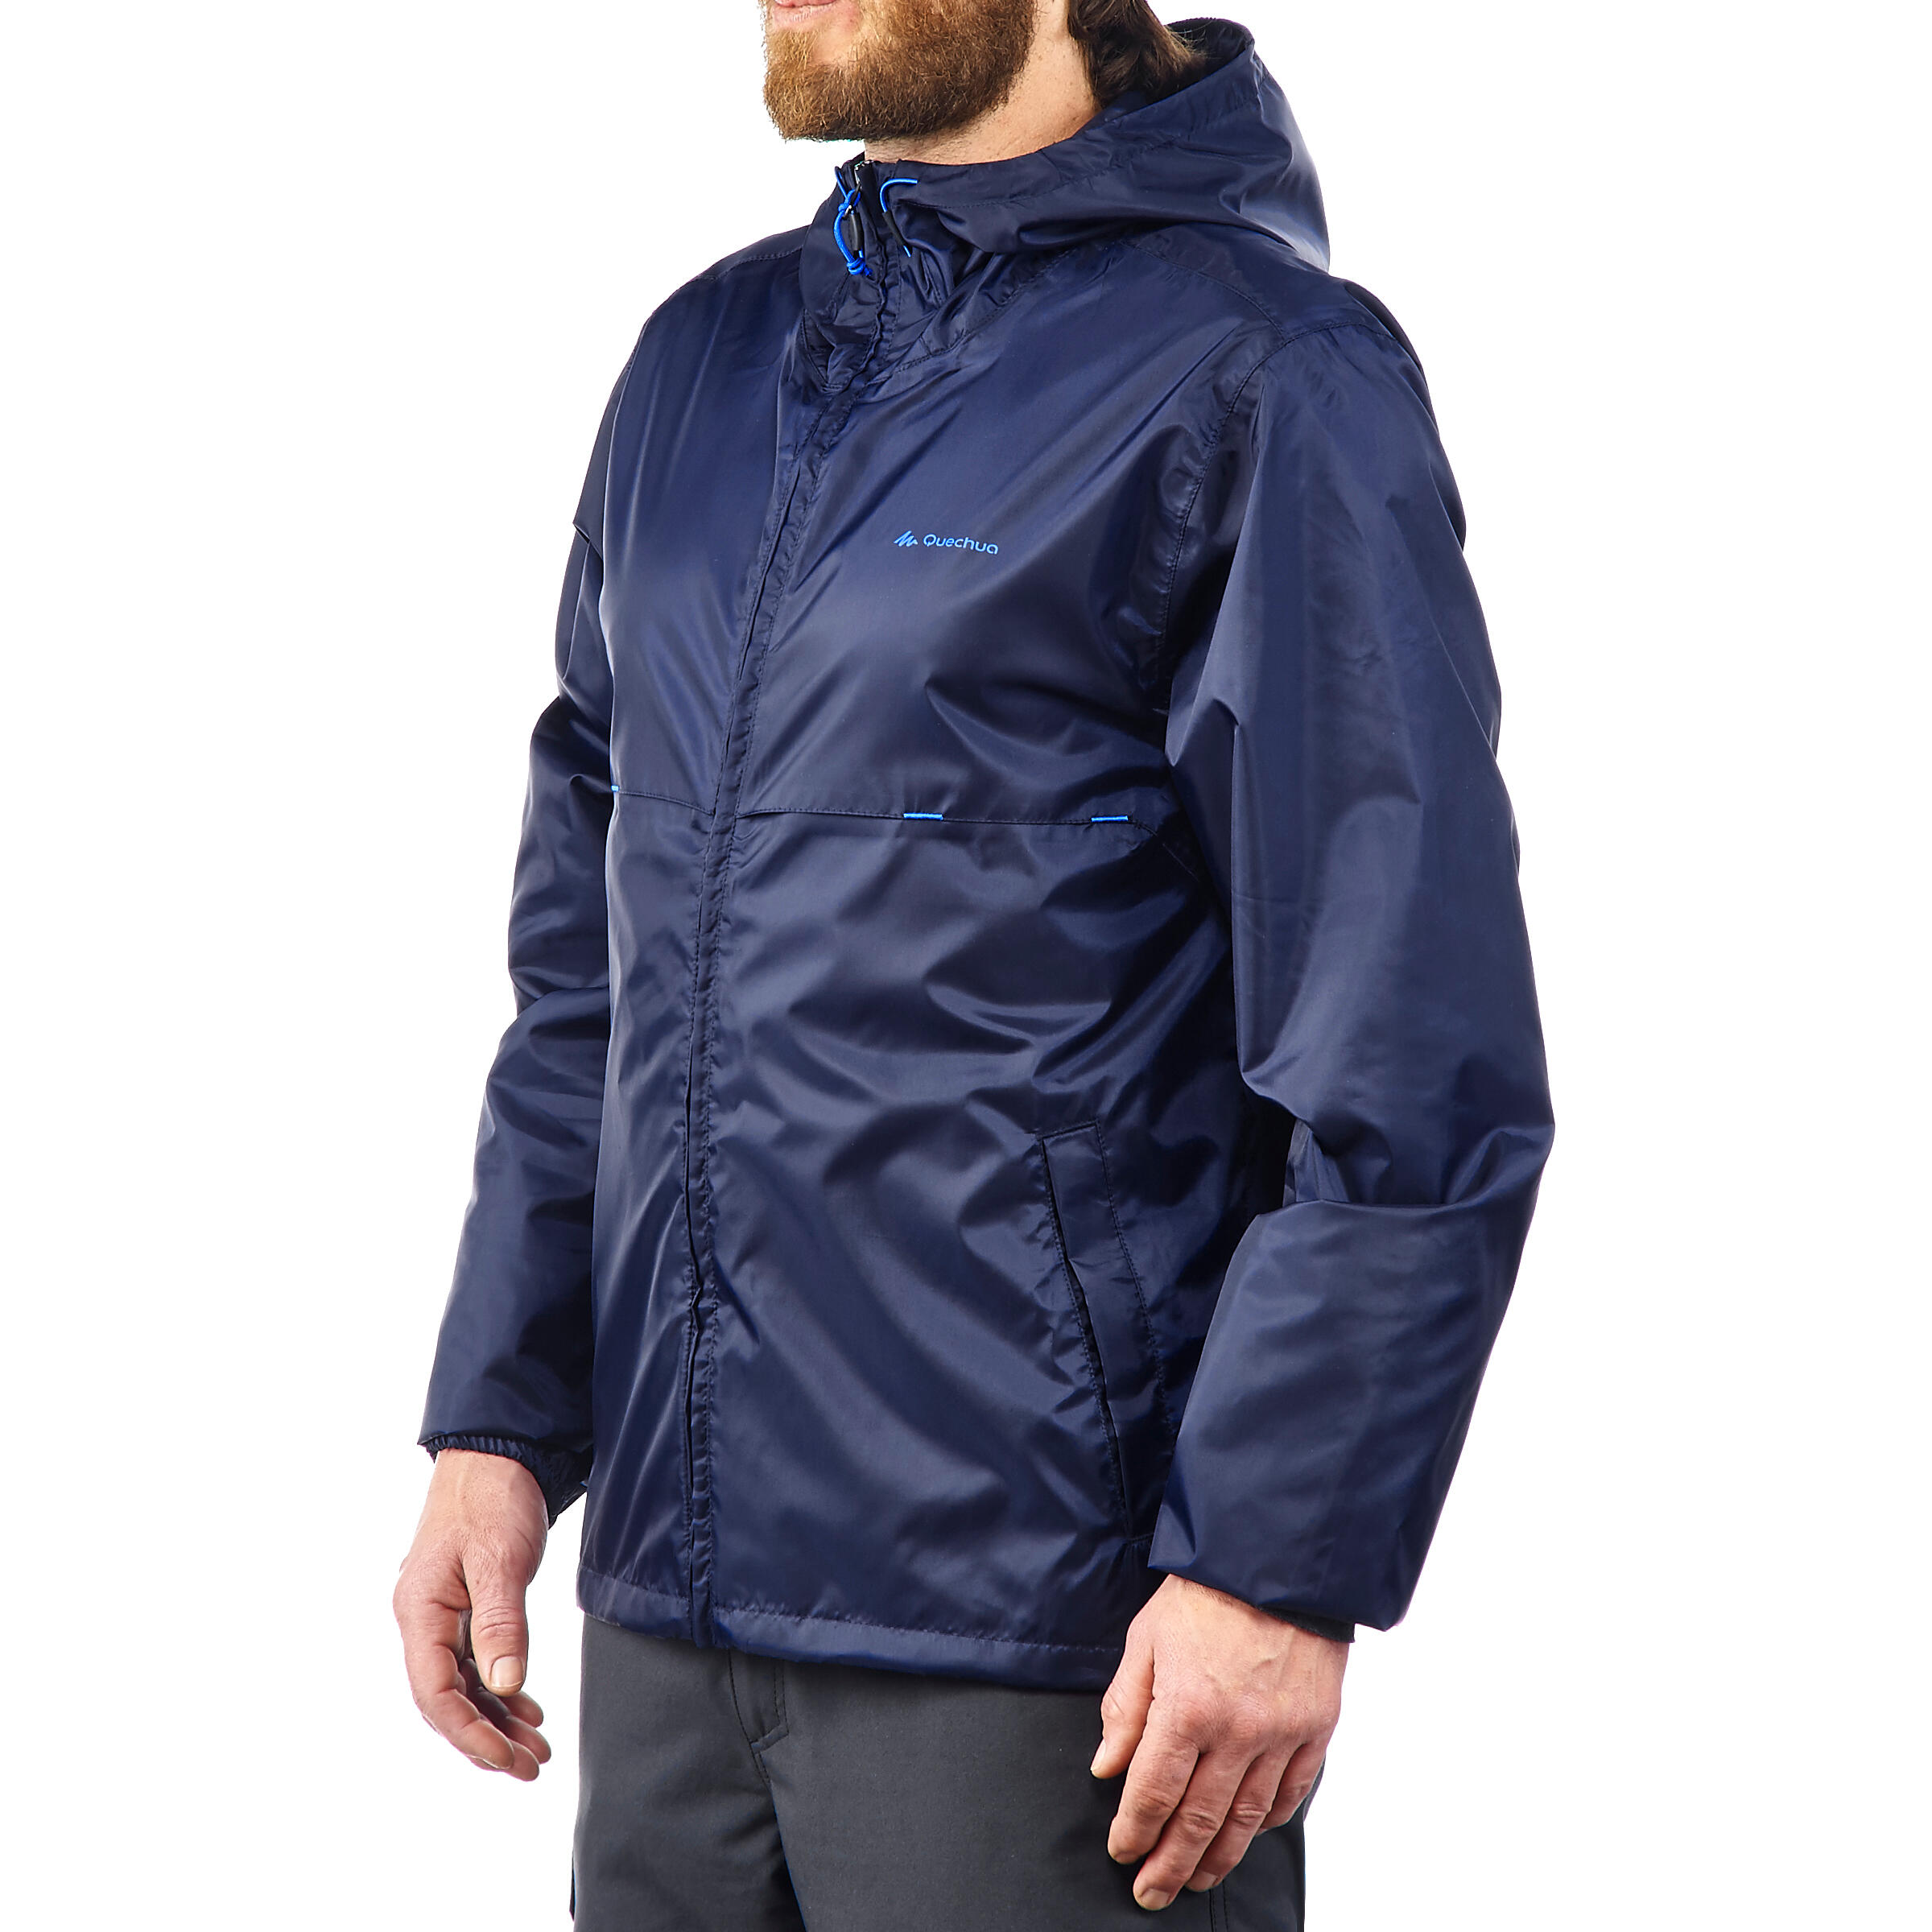 Waterproof Hiking Rain Jacket - Navy